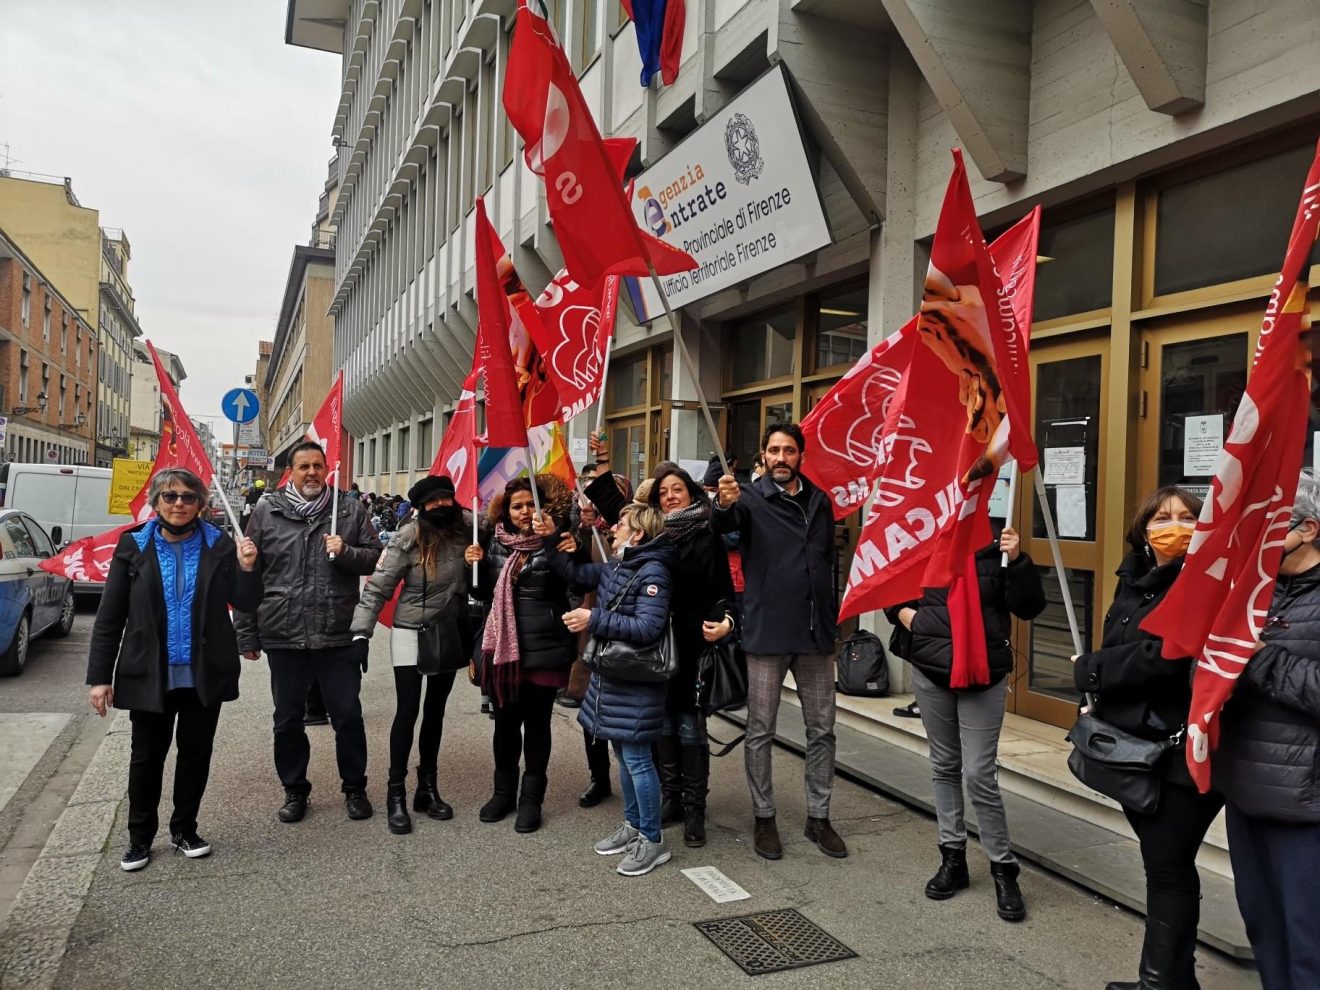 Agenzia delle Entrate, sciopero addette pulizie. Il presidio regionale a Firenze (foto)